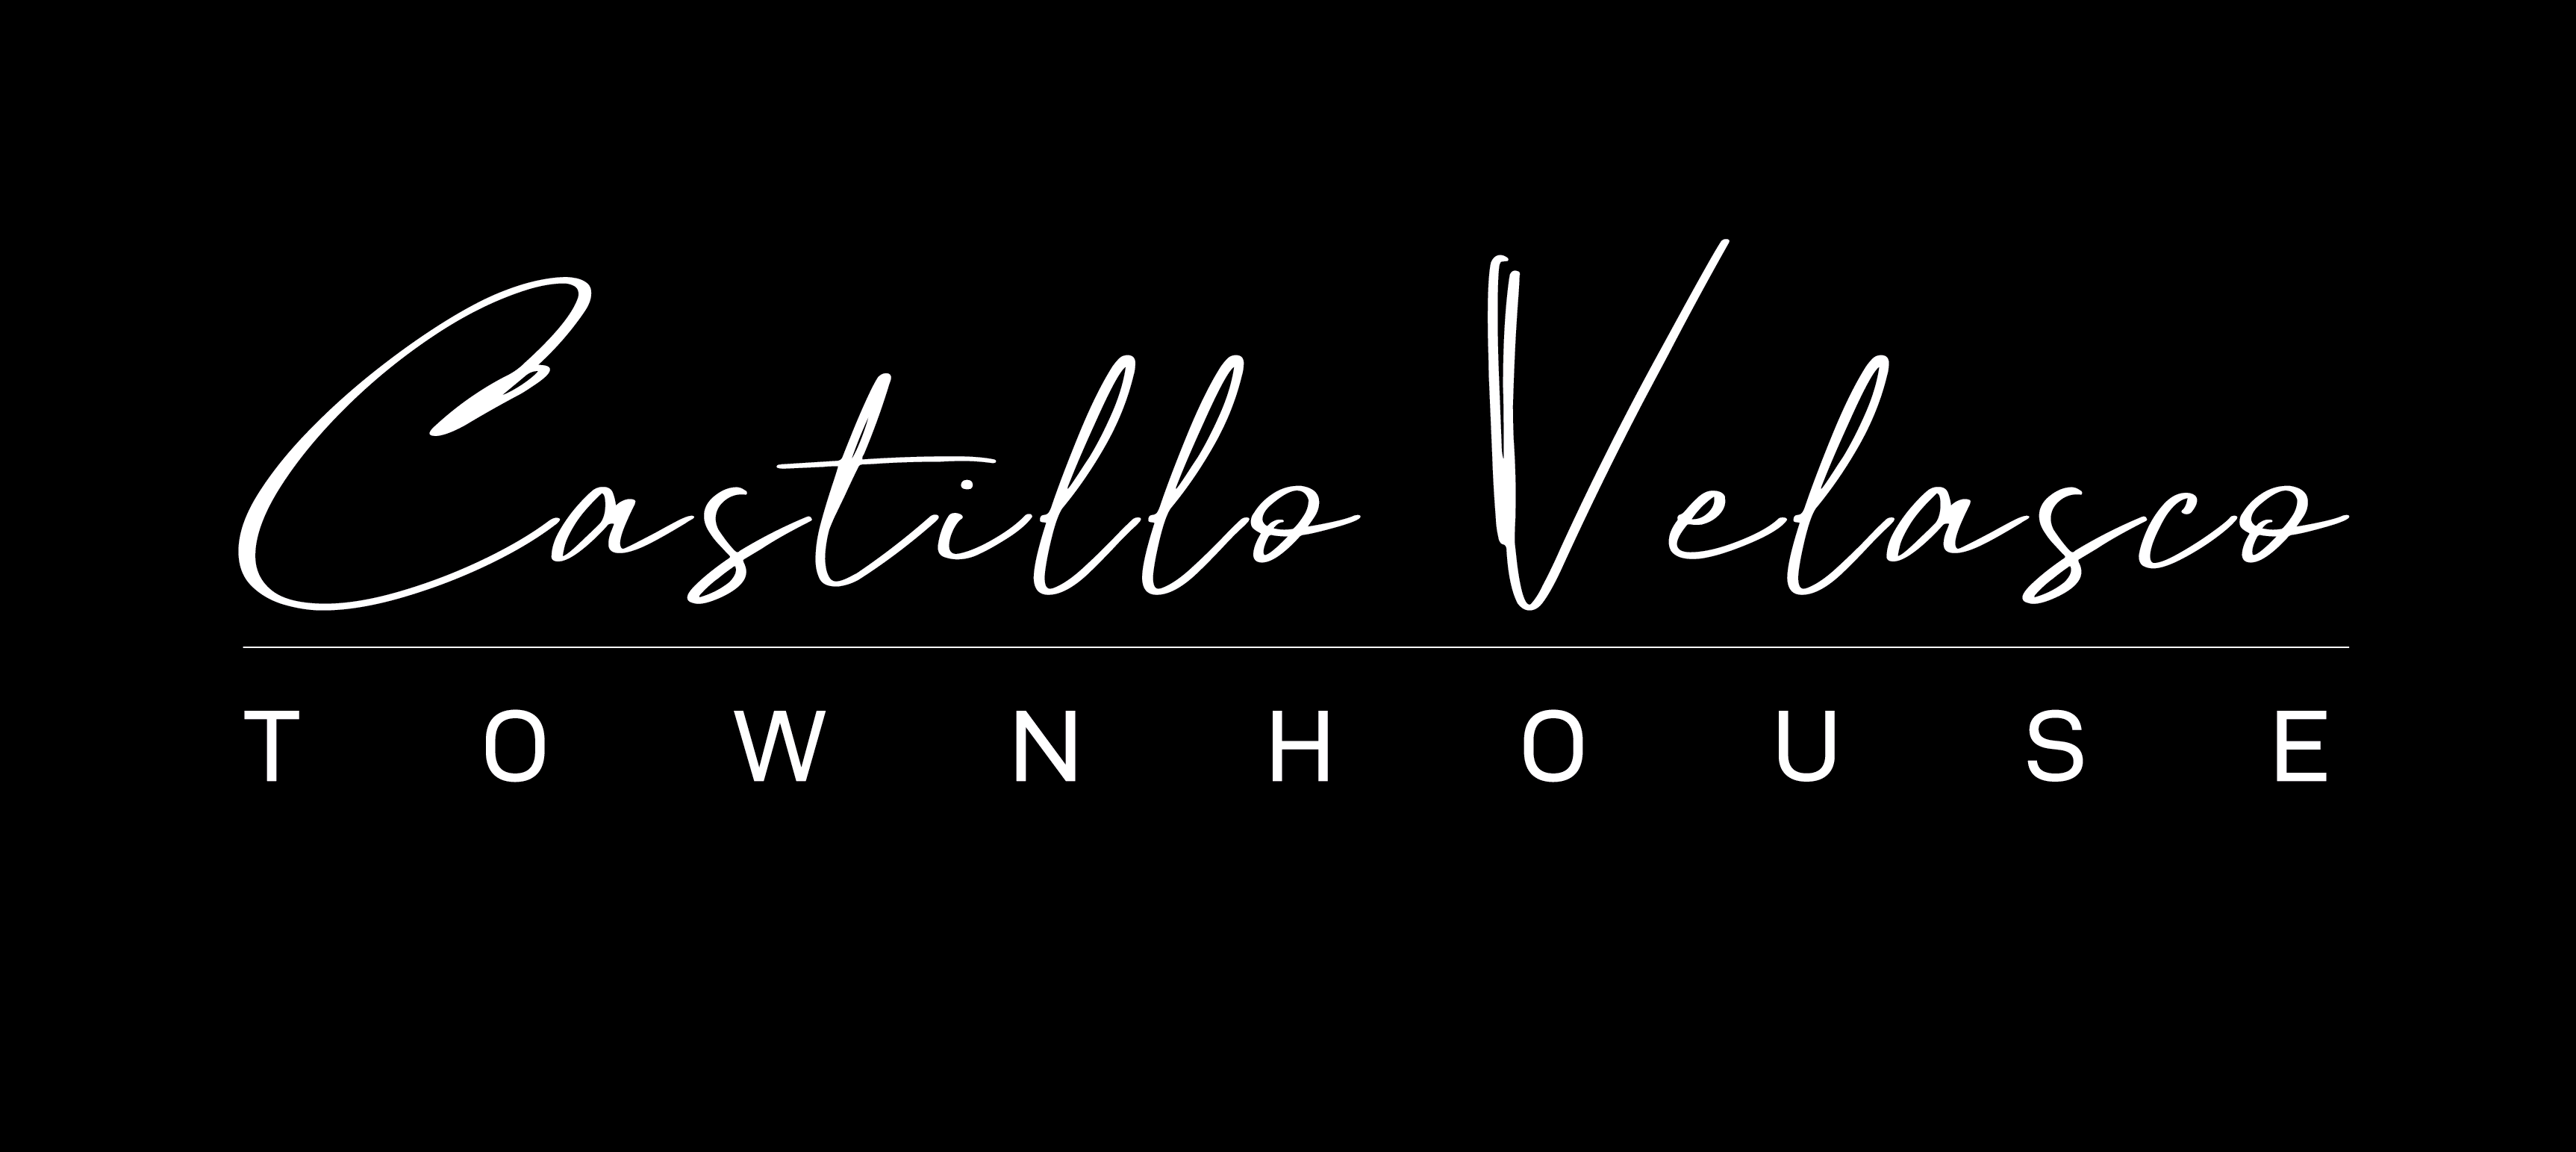 Logo_web_castillo